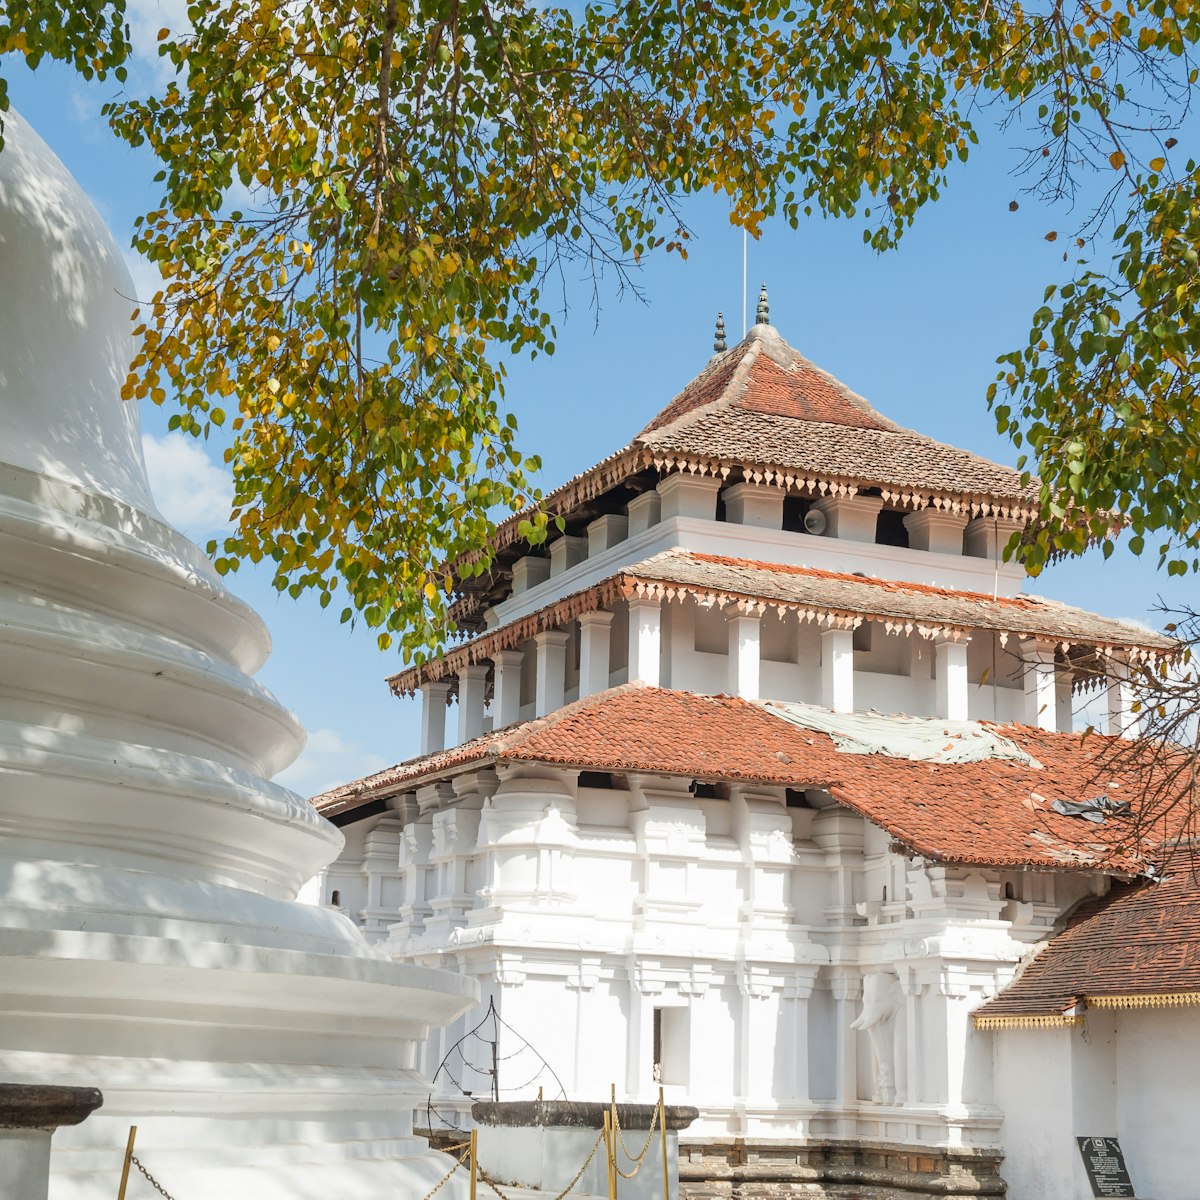 Lankatilake Temple, Kandy, Sri Lanka.